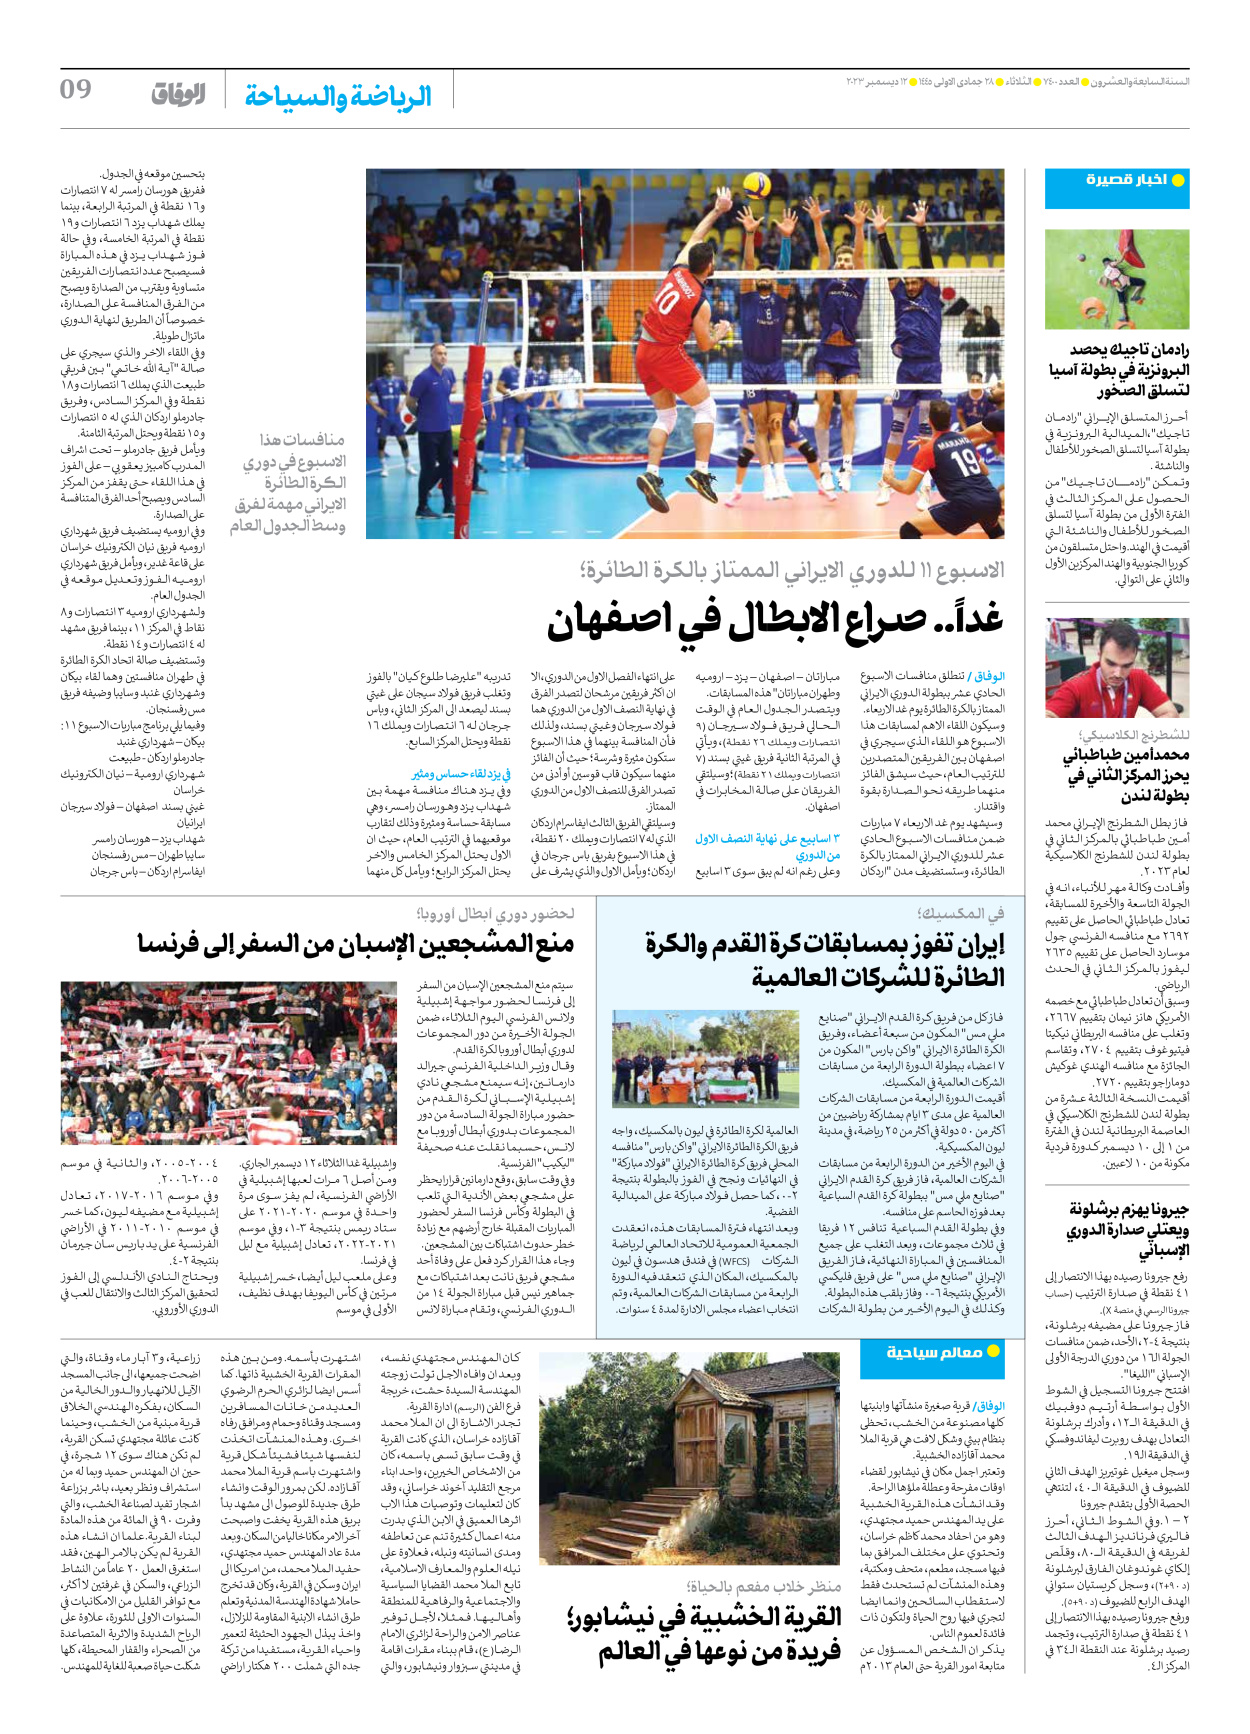 صحیفة ایران الدولیة الوفاق - العدد سبعة آلاف وأربعمائة - ١٢ ديسمبر ٢٠٢٣ - الصفحة ۹